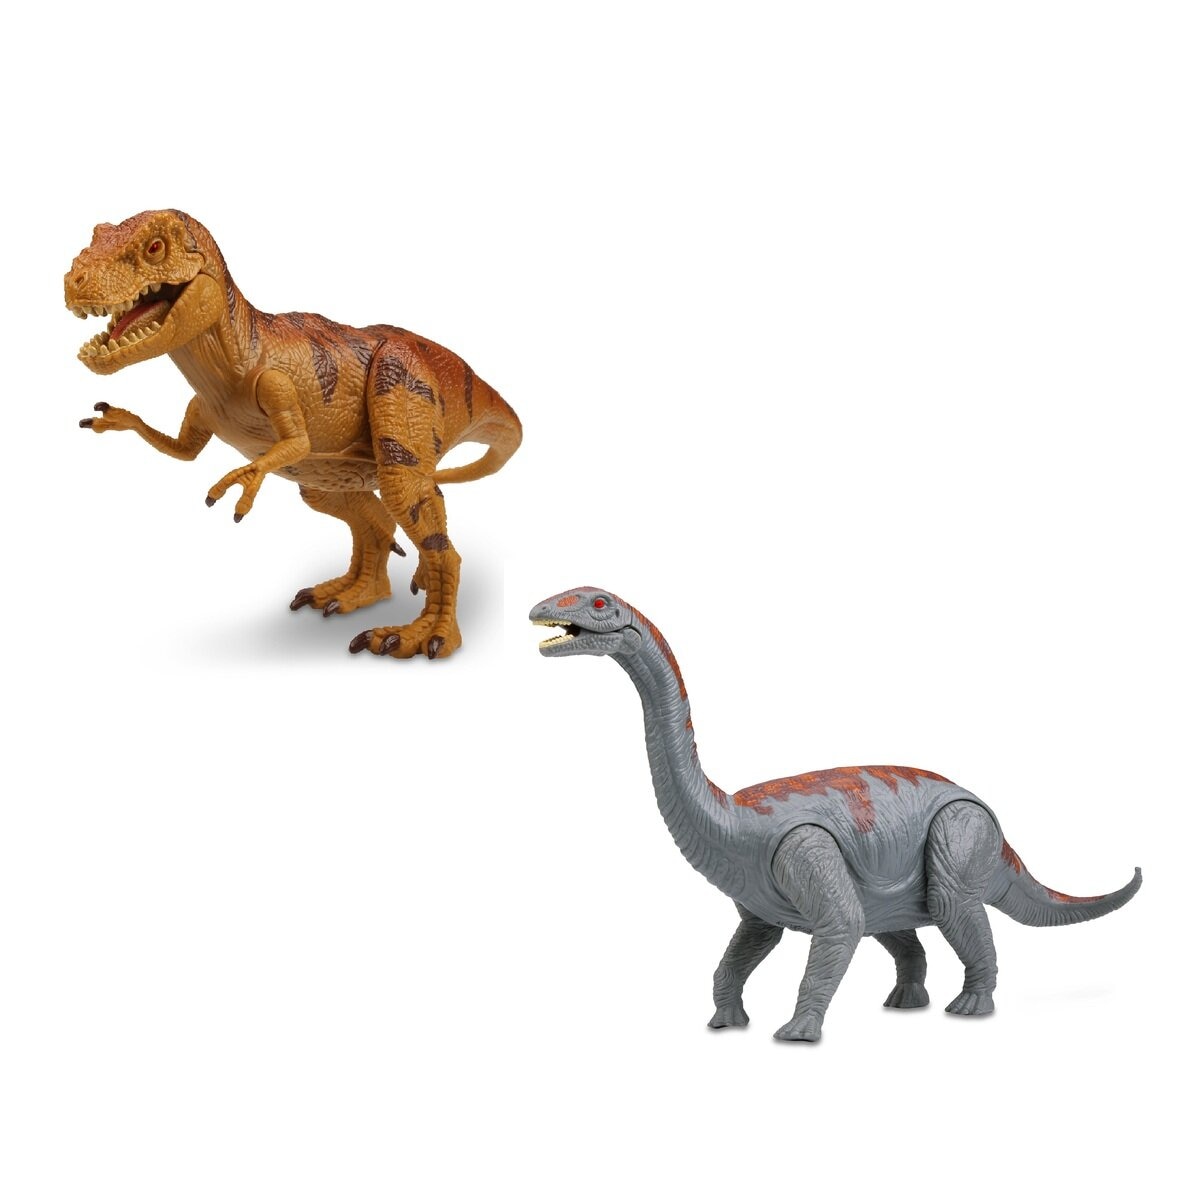 ライト&サウンド付き 恐竜フィギュア5体セット カルノタウルス, パキケファロサウルス, ステゴサウルス, アルゼ